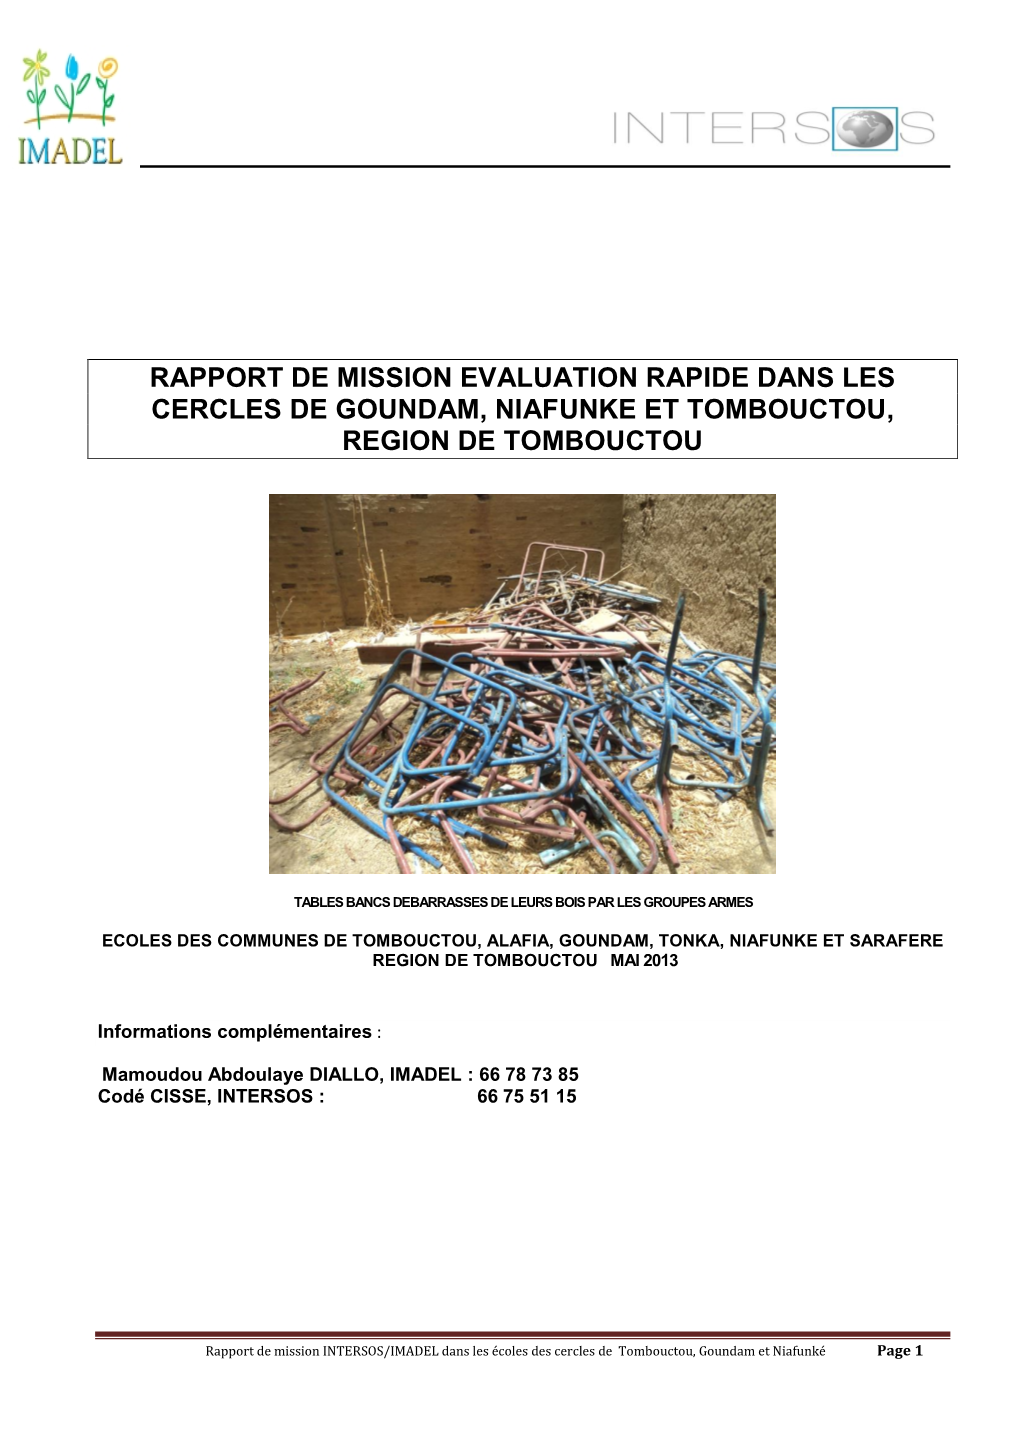 Rapport De Mission Evaluation Rapide Dans Les Cercles De Goundam, Niafunke Et Tombouctou, Region De Tombouctou